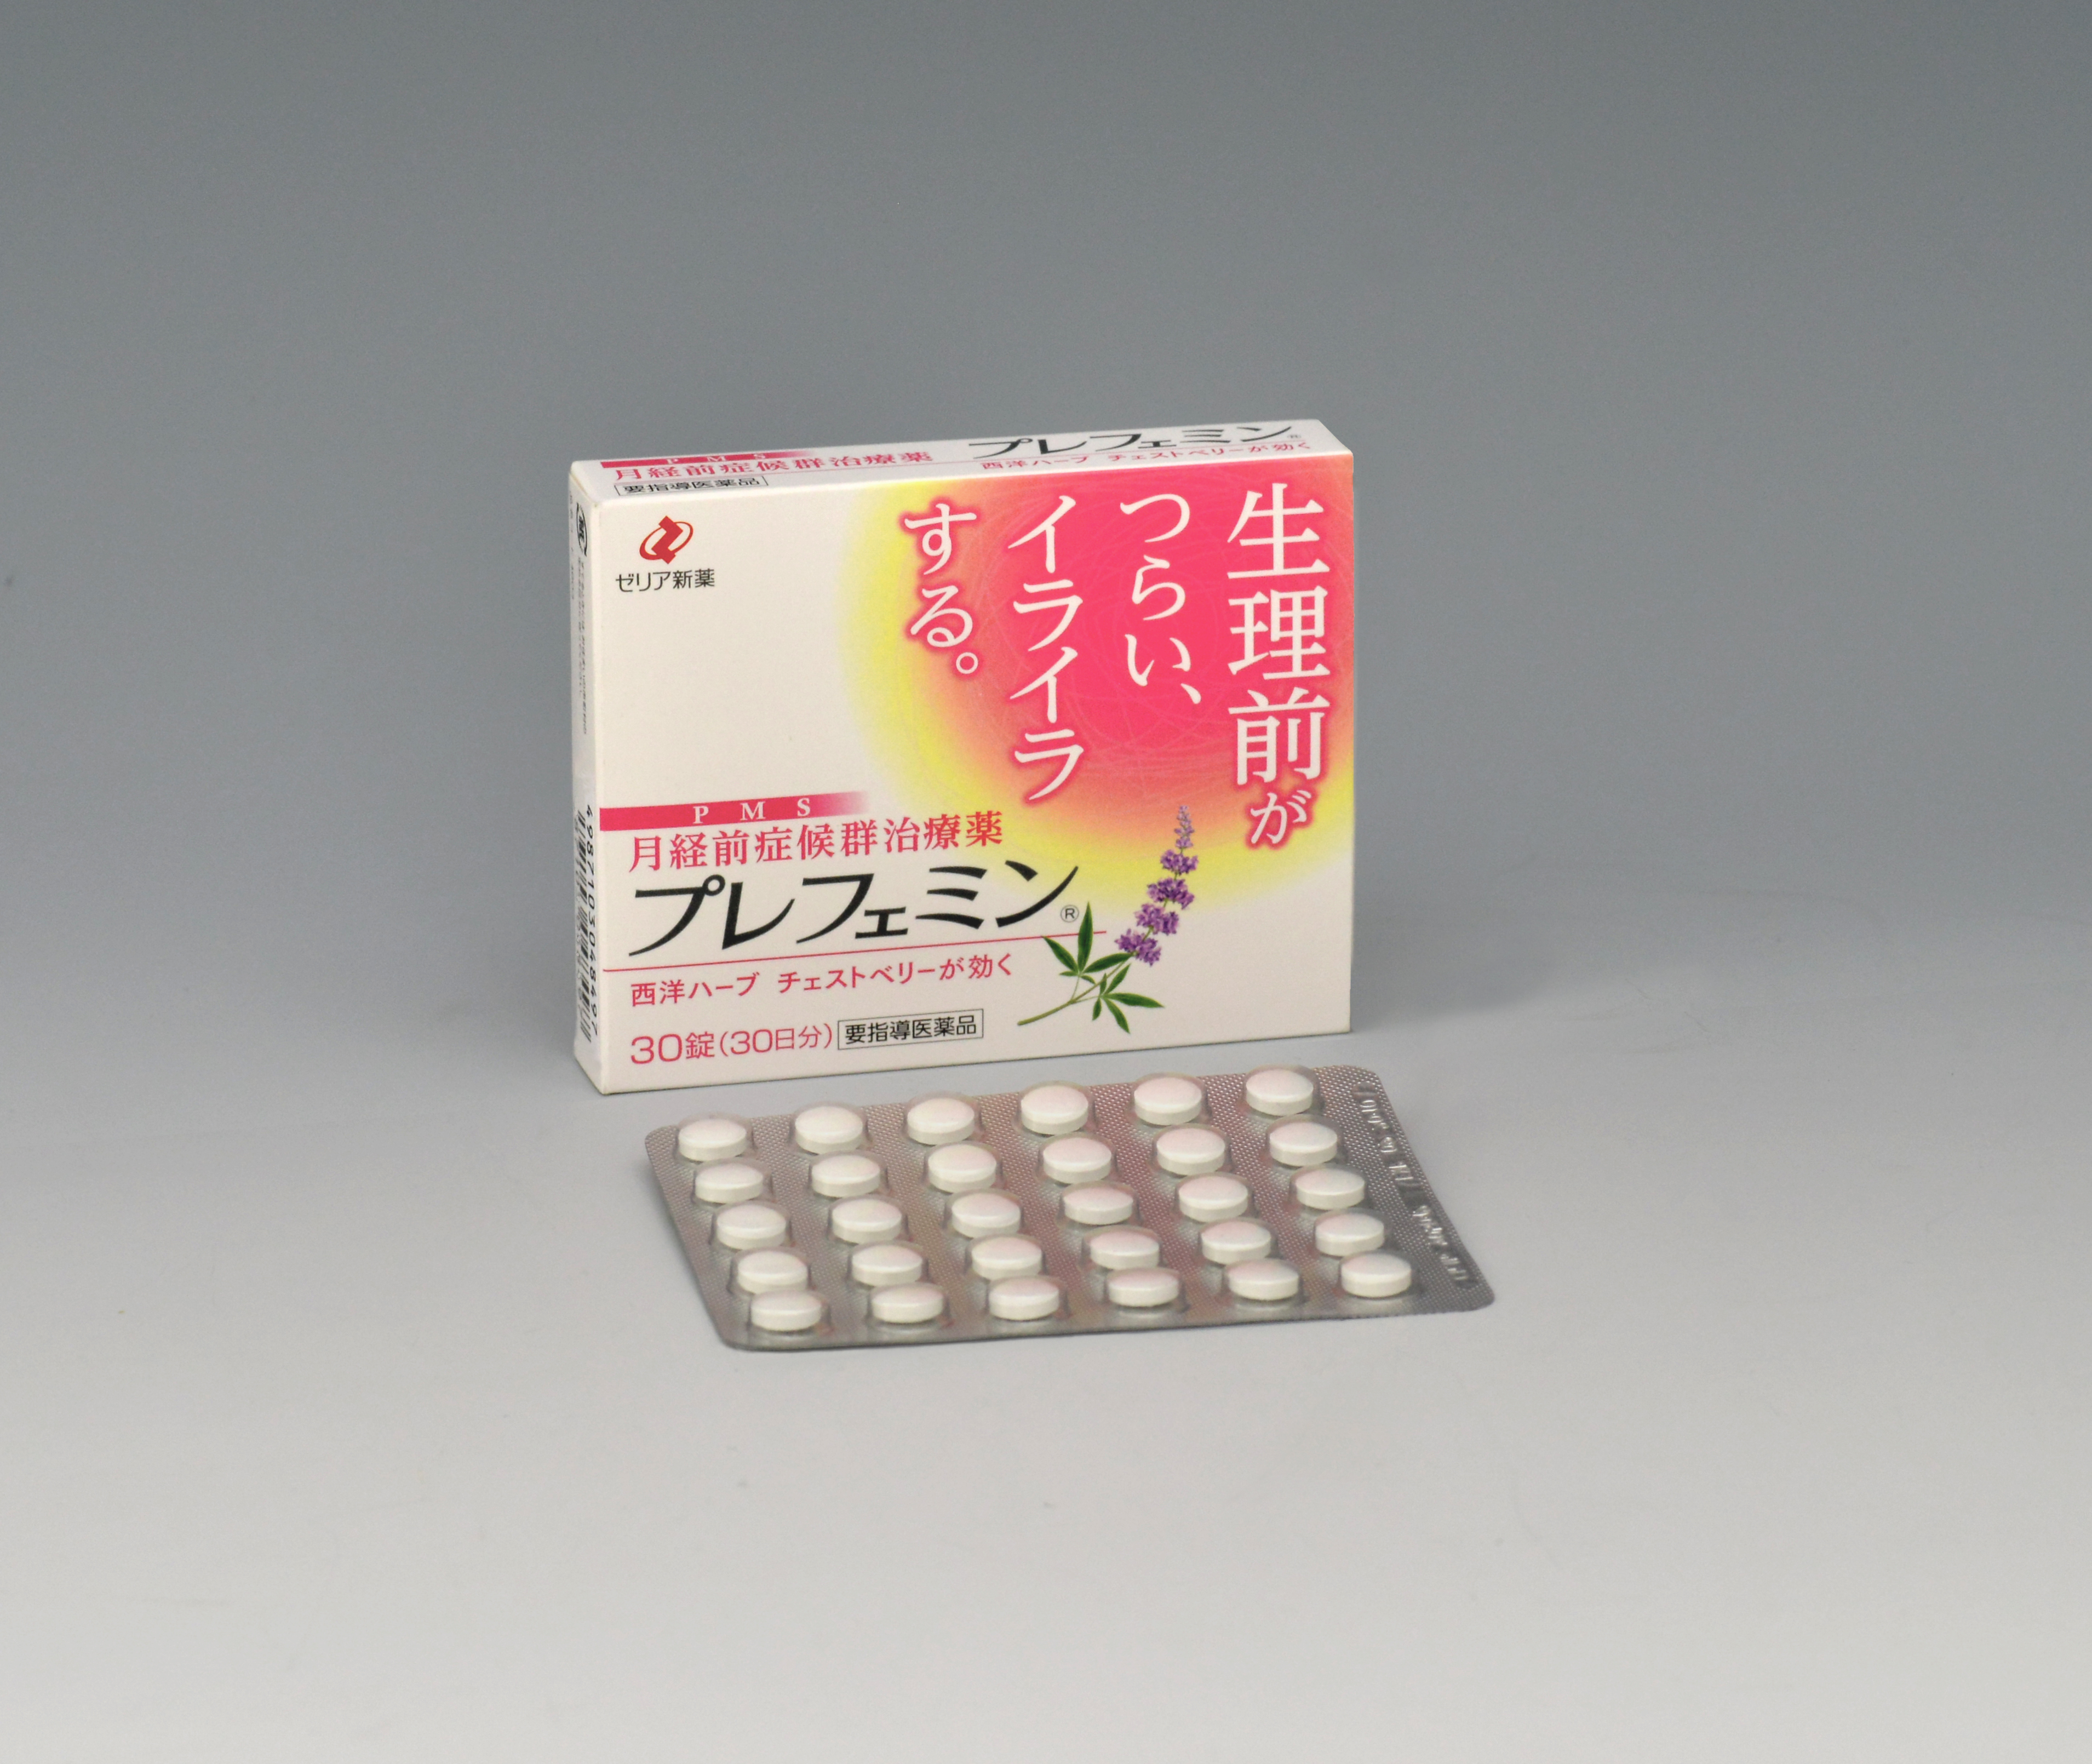 女性の多くが悩む月経前症候群 Pms 日本で唯一の治療薬 プレフェミン